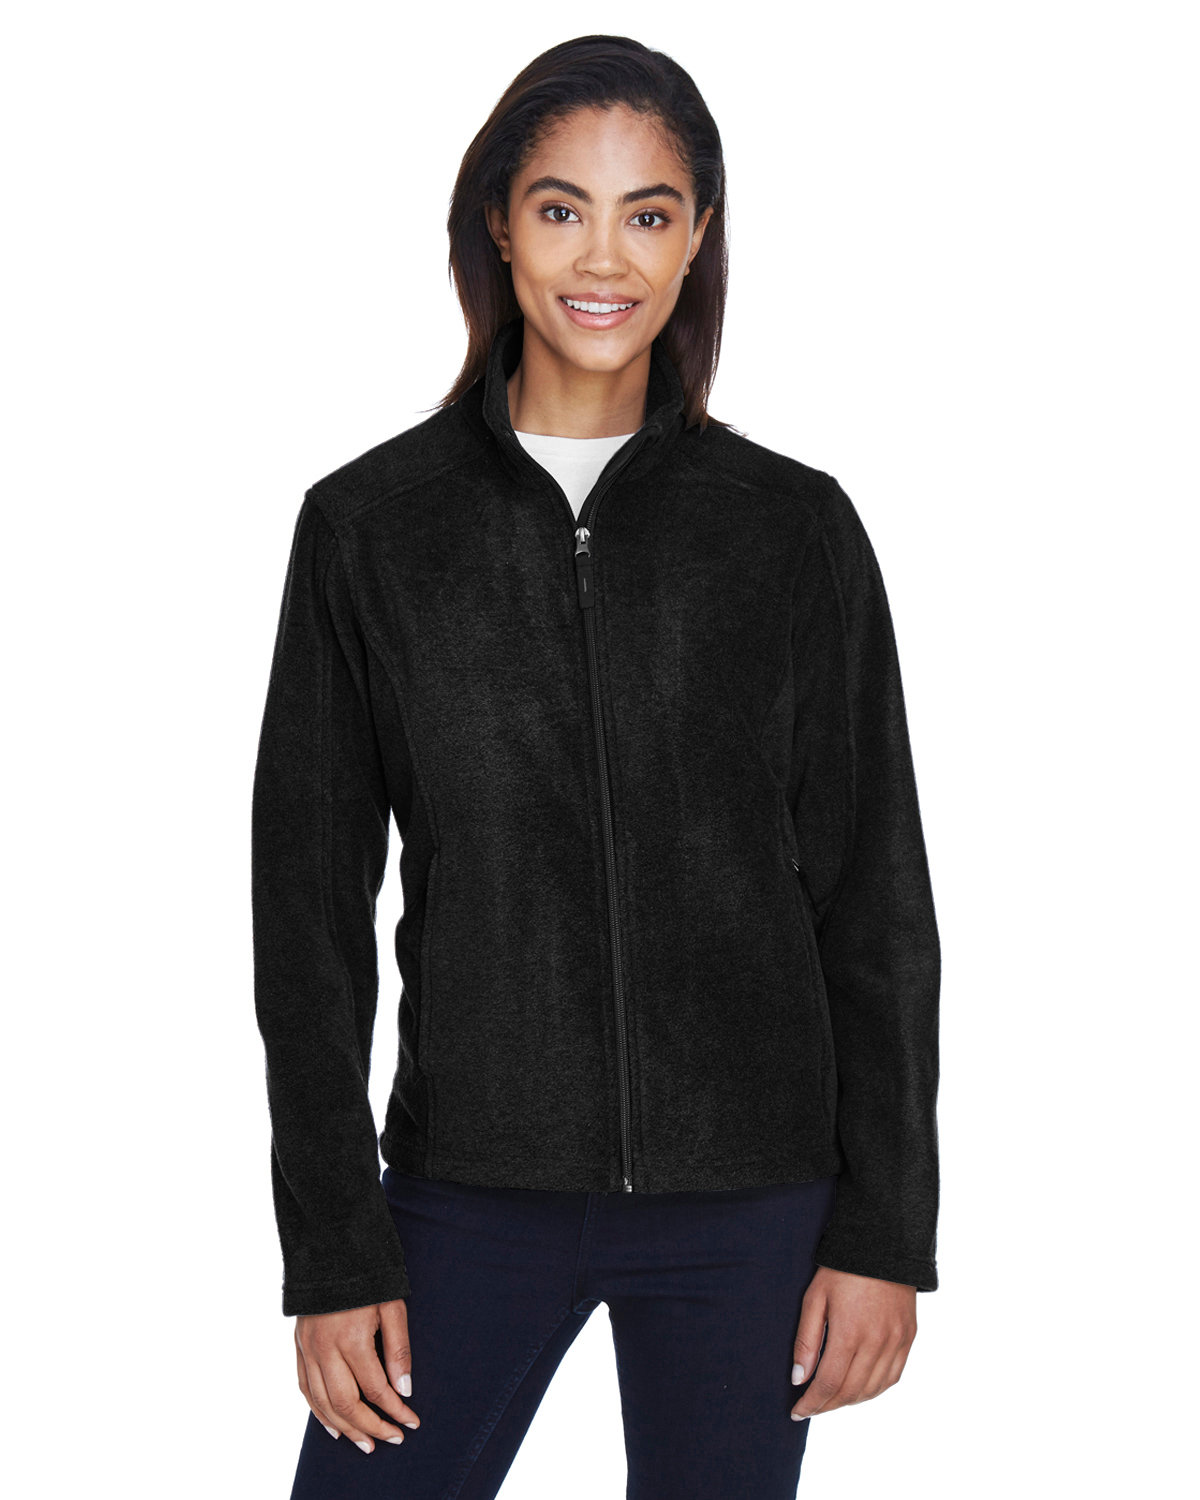 Core 365 Ladies' Journey Fleece Jacket BLACK 